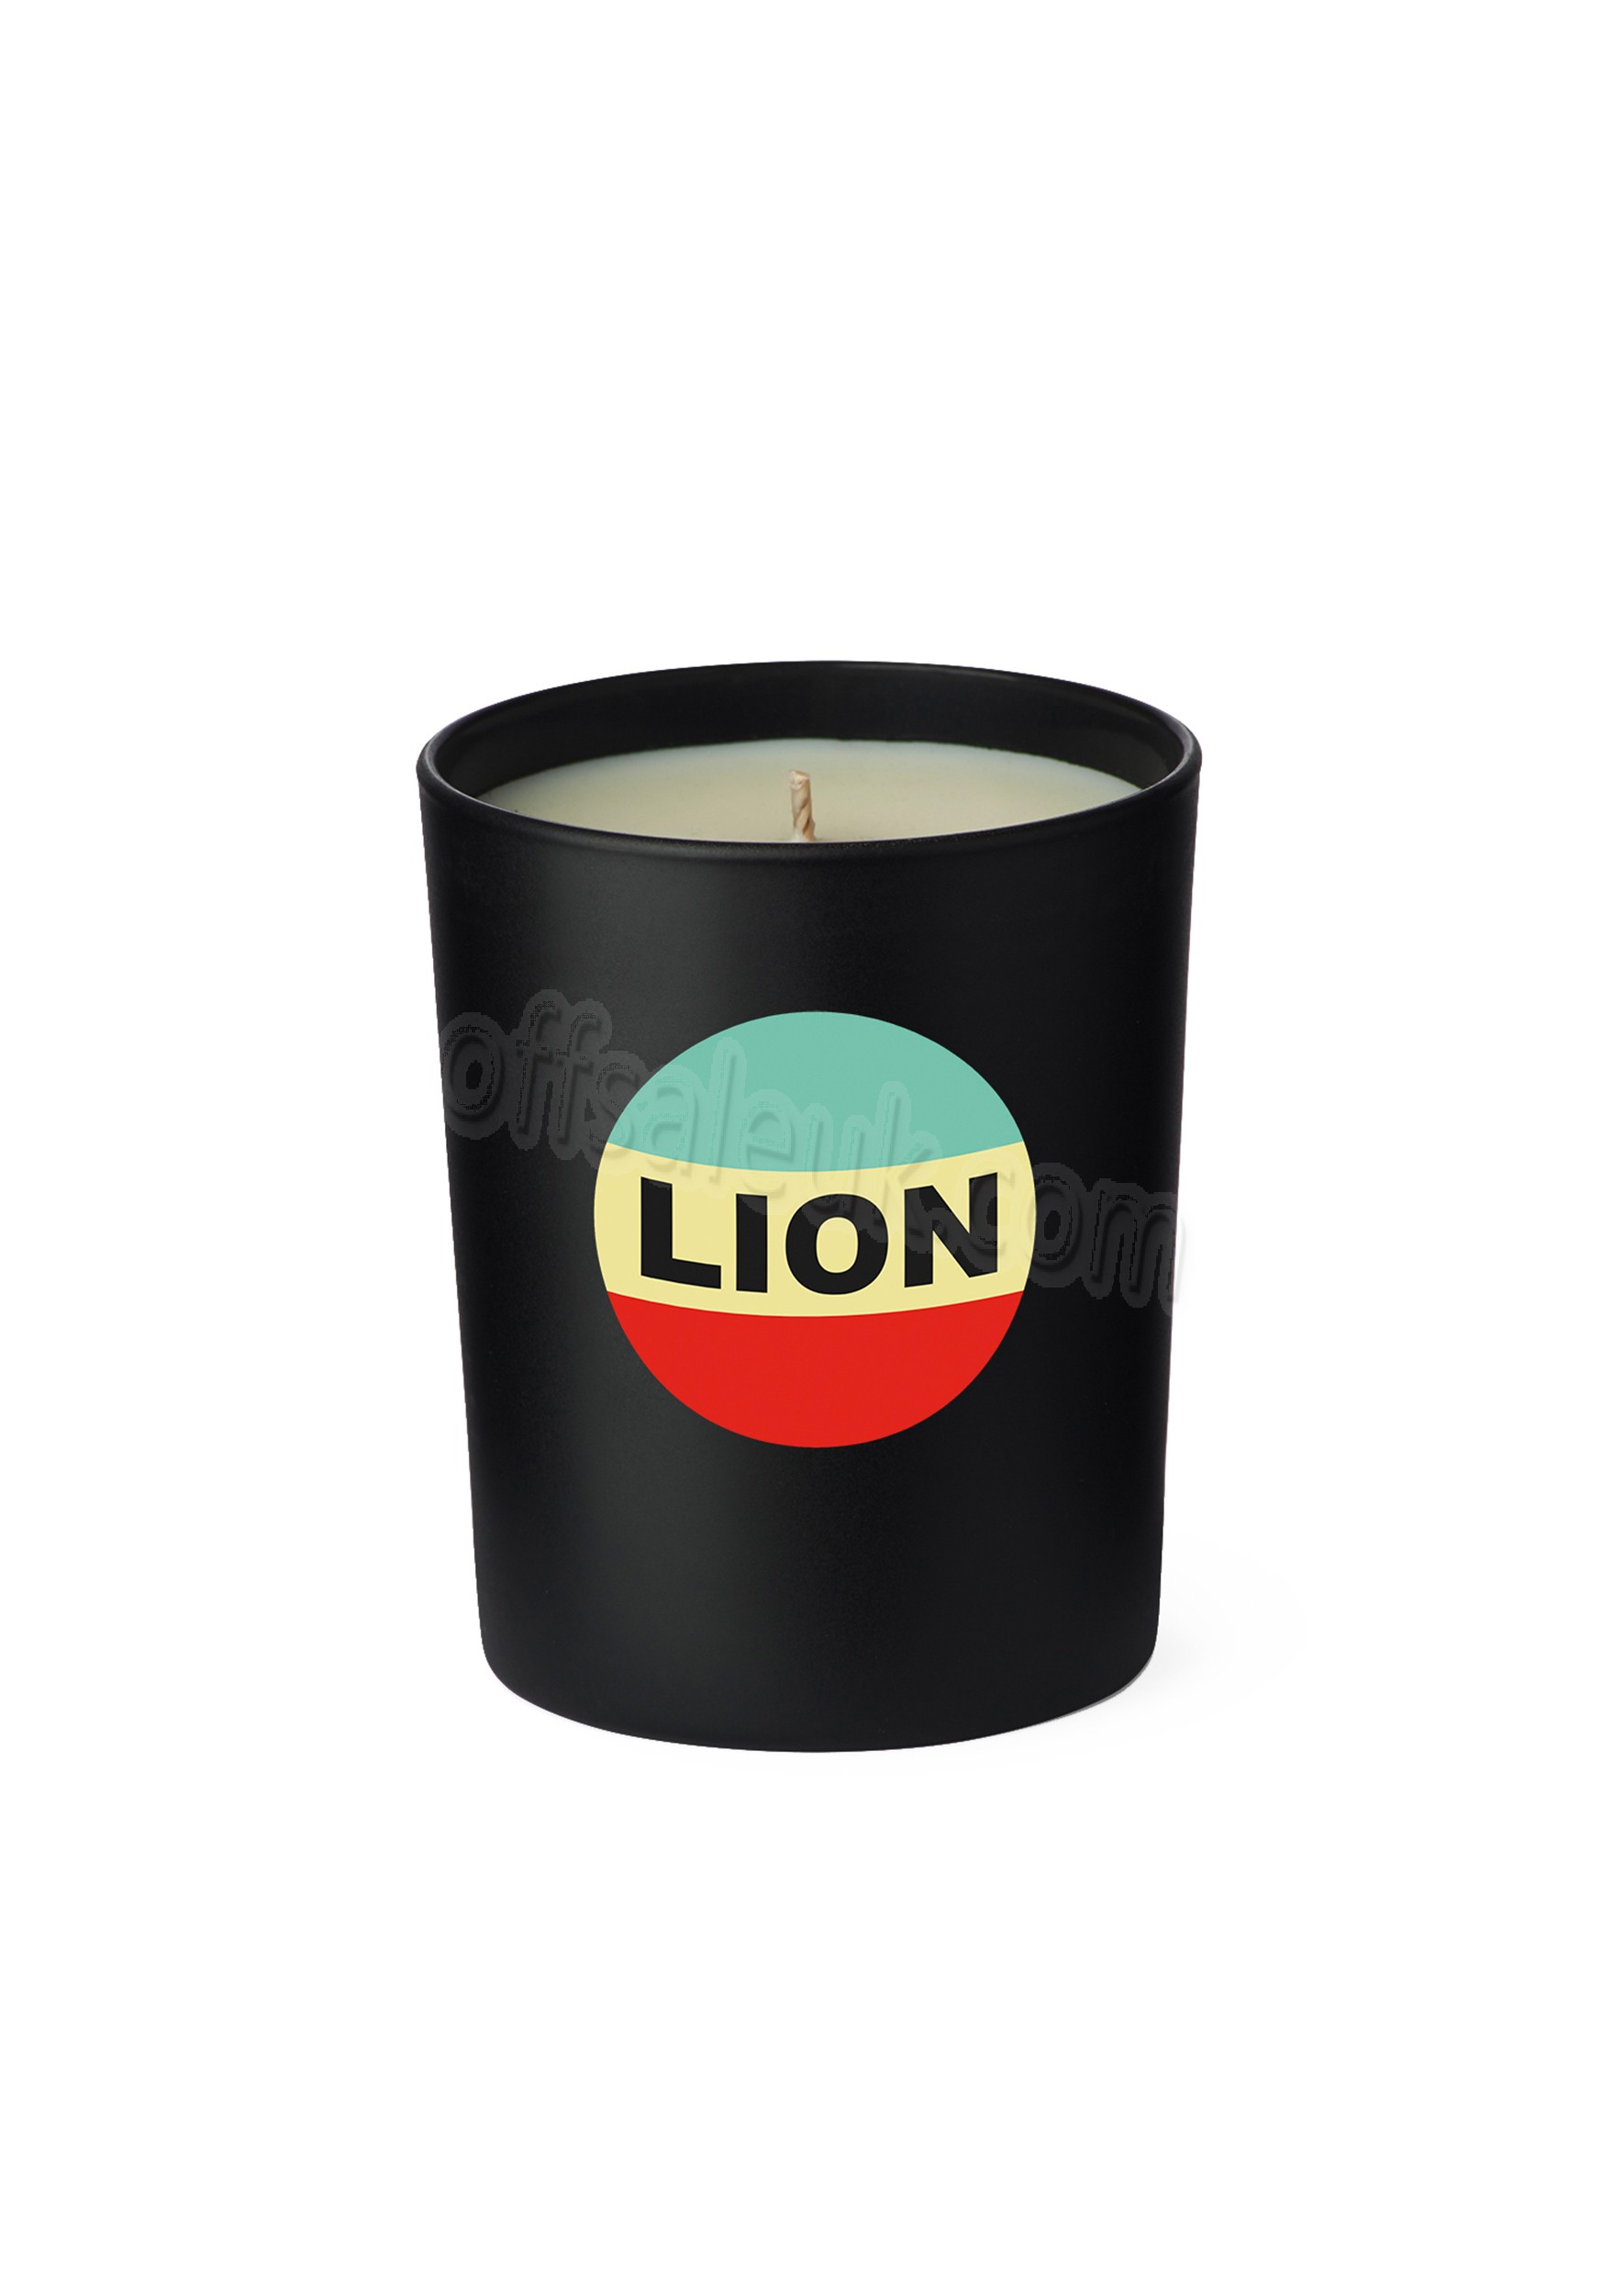 Cheap Lion Candle - Cheap Lion Candle